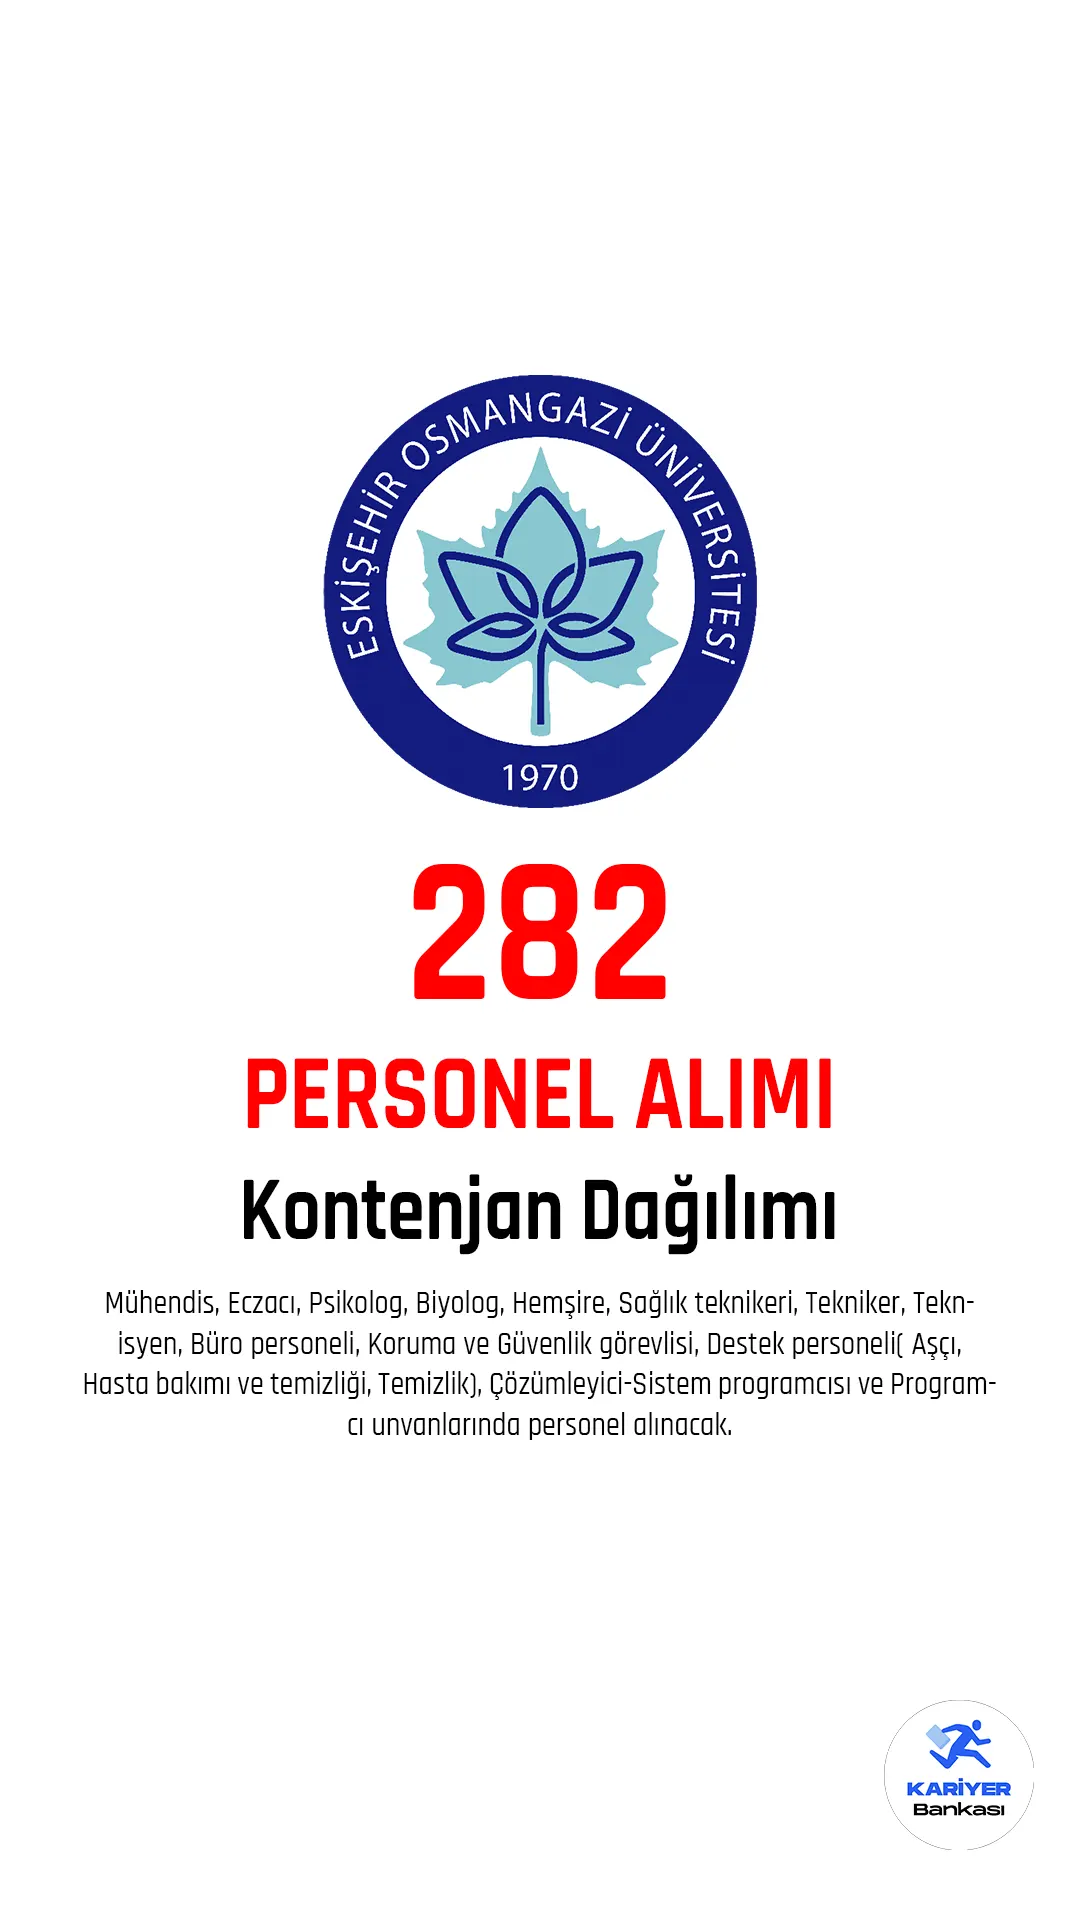 Eskişehir Osmangazi Üniversitesi personel alımı başvuruları devam ediyor.